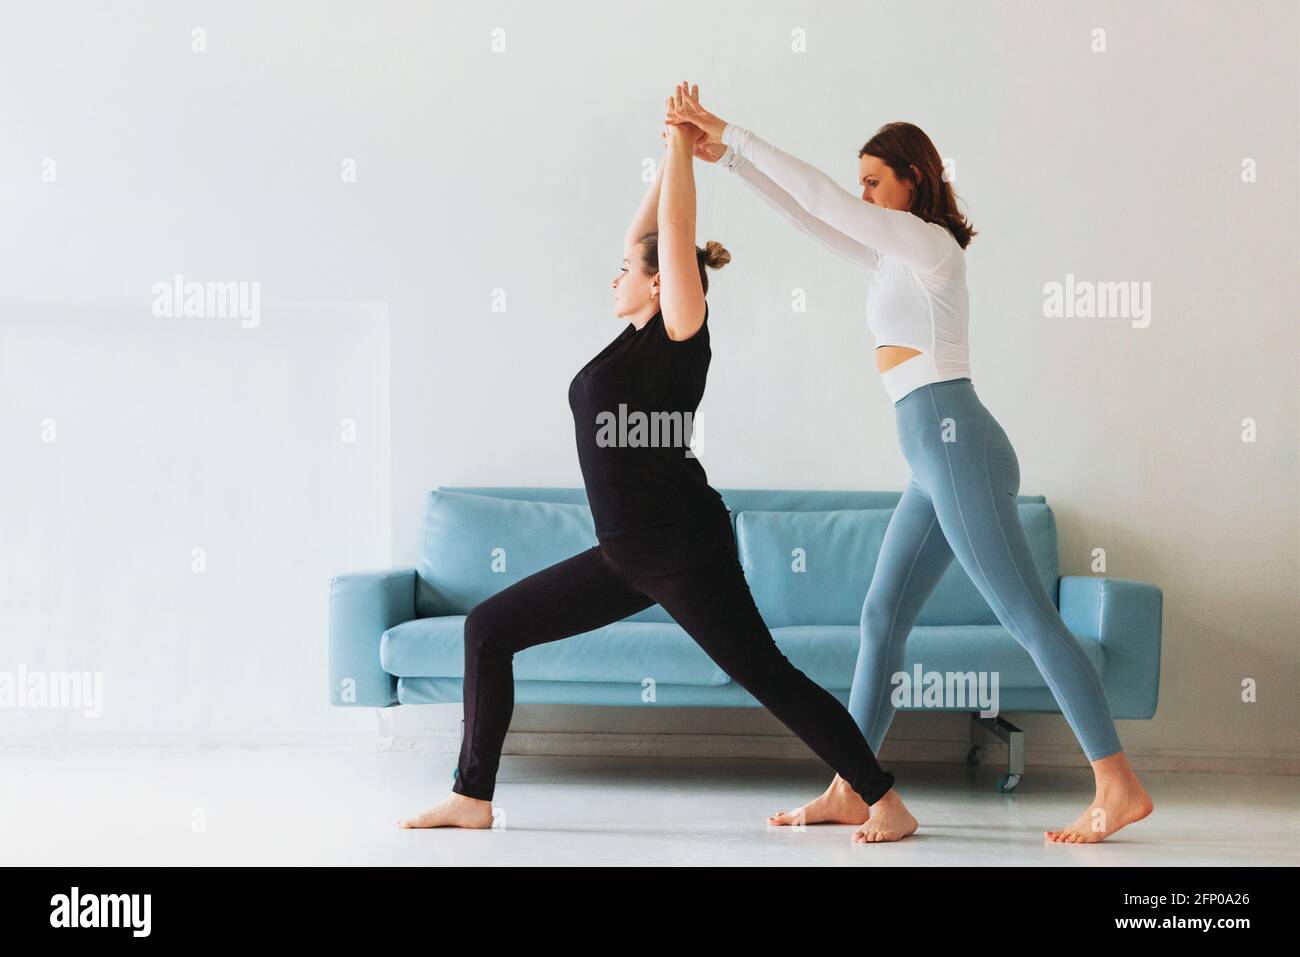 Erwachsene Frau, die Frauen in Sportkleidung mit Yoga-Pose hilft Und die Arme strecken Stockfoto